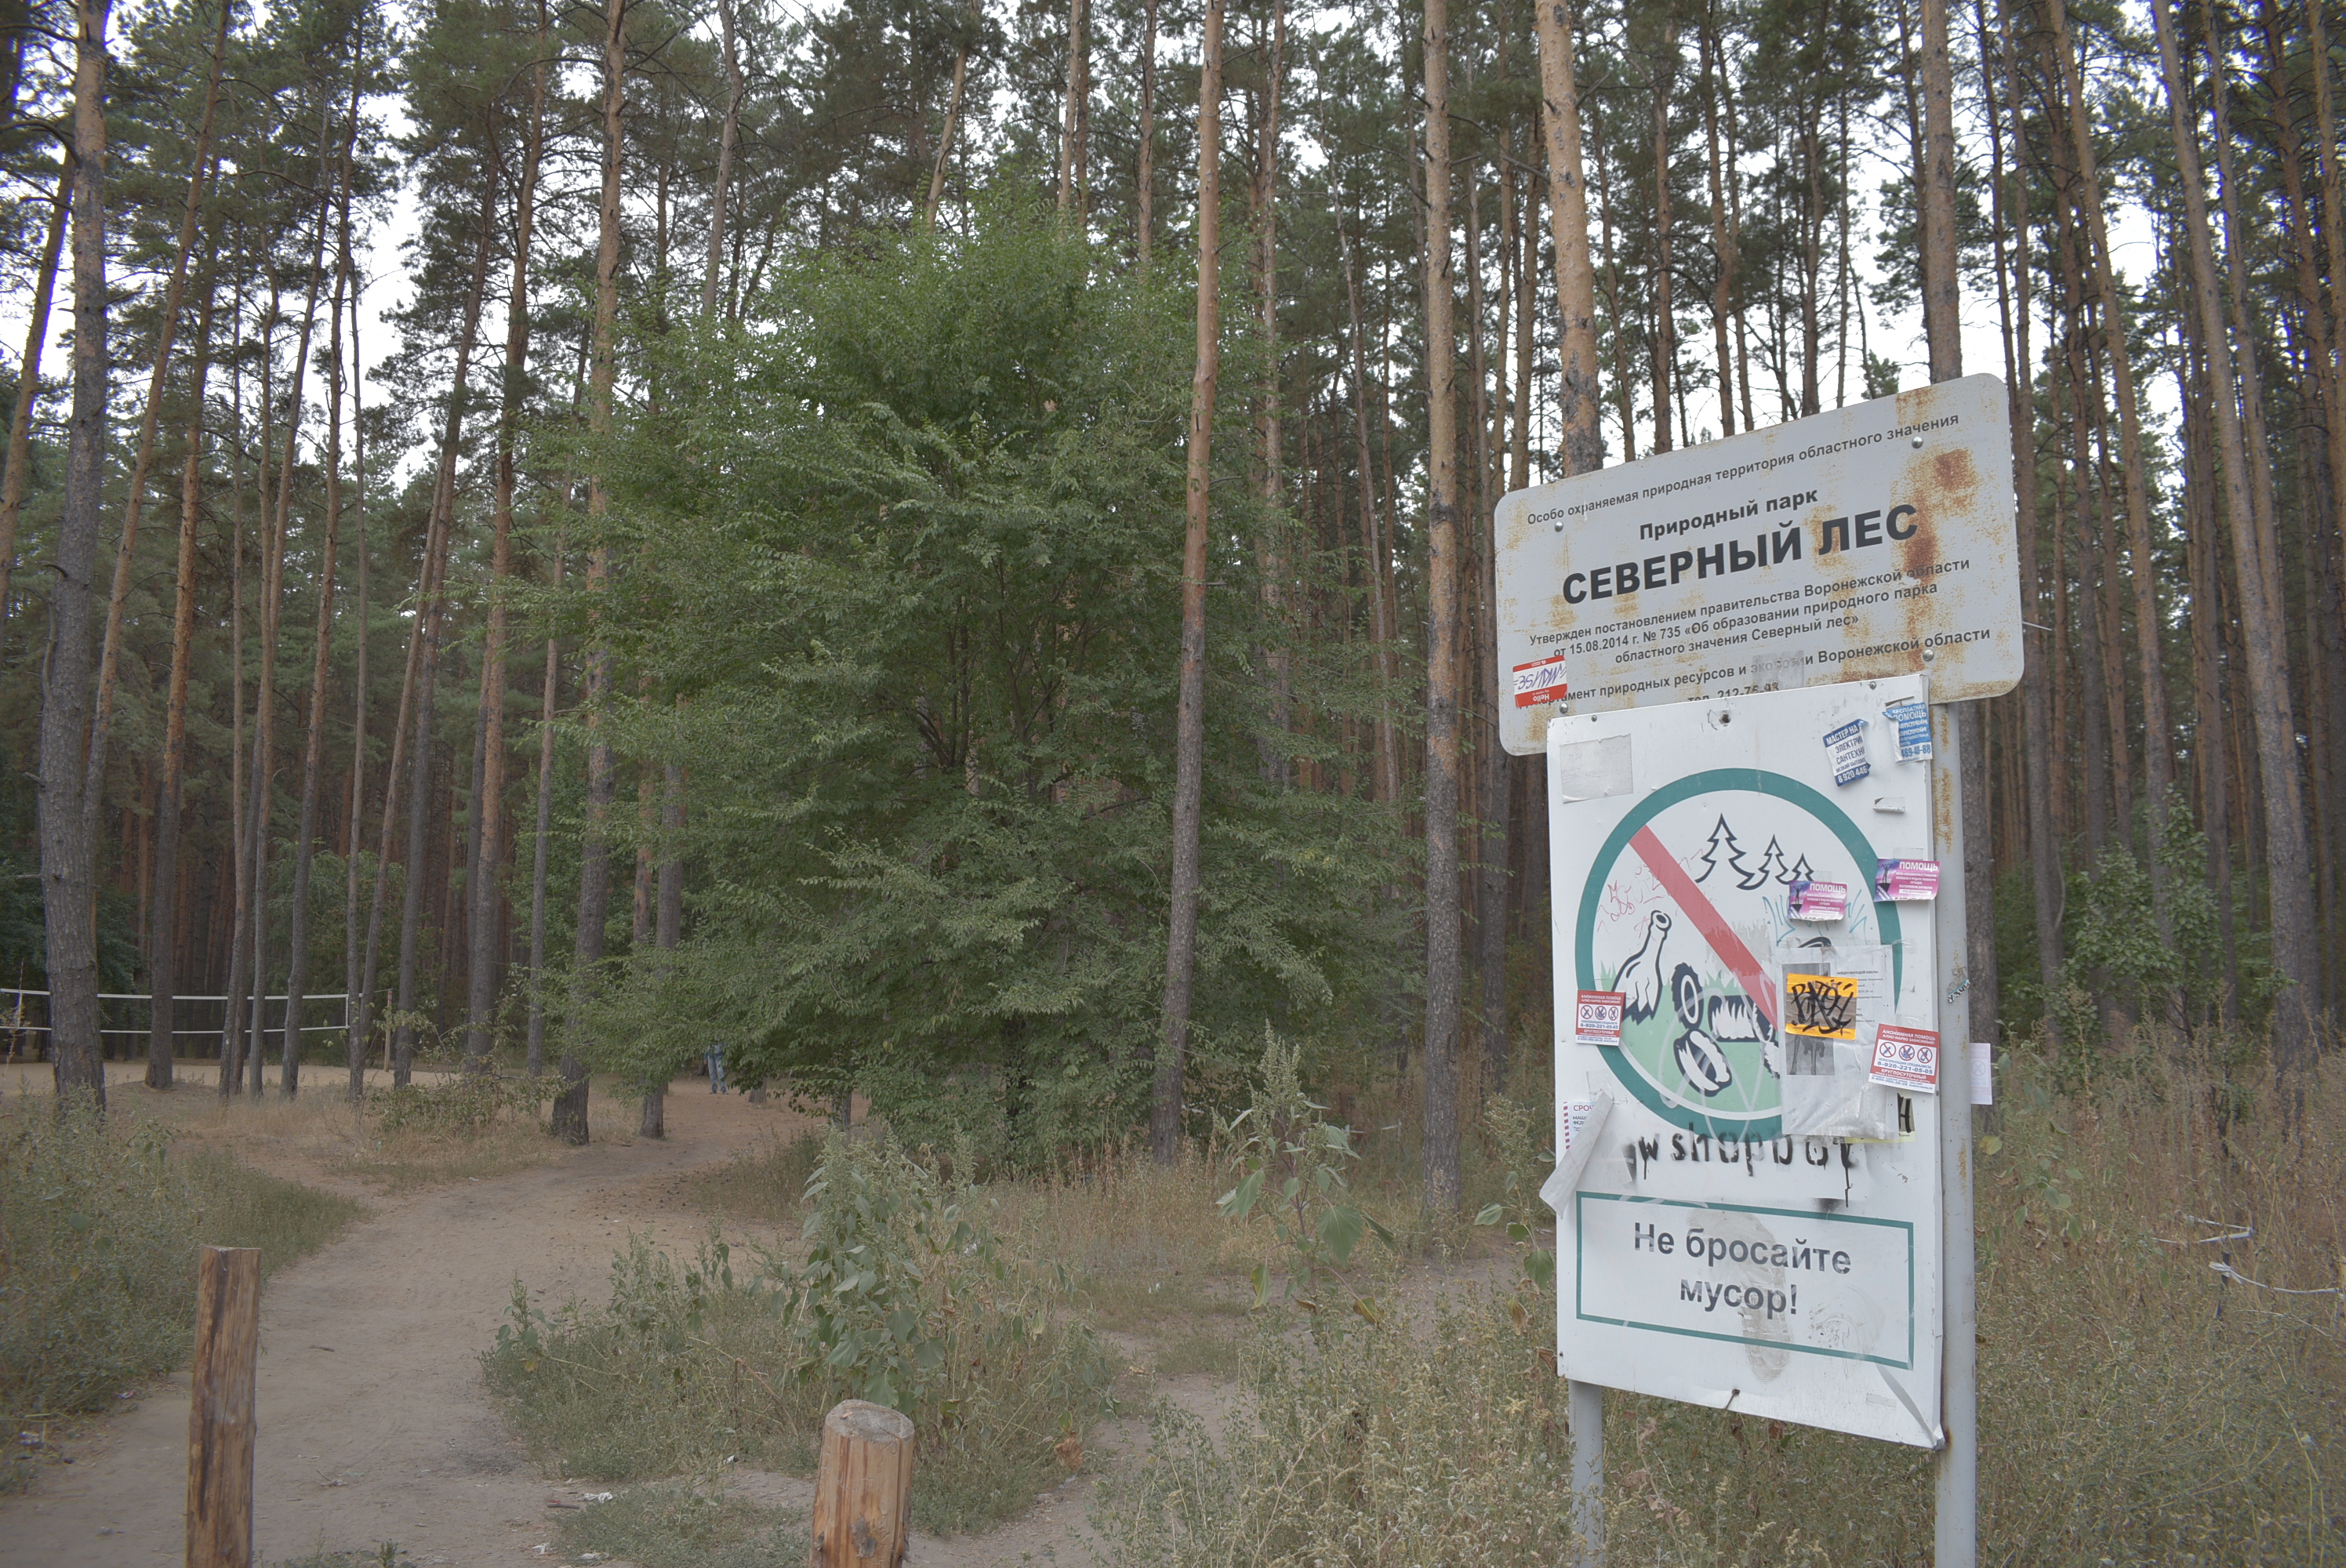 «Северный лес» сделают зоной тихого отдыха в Воронеже - фото 1